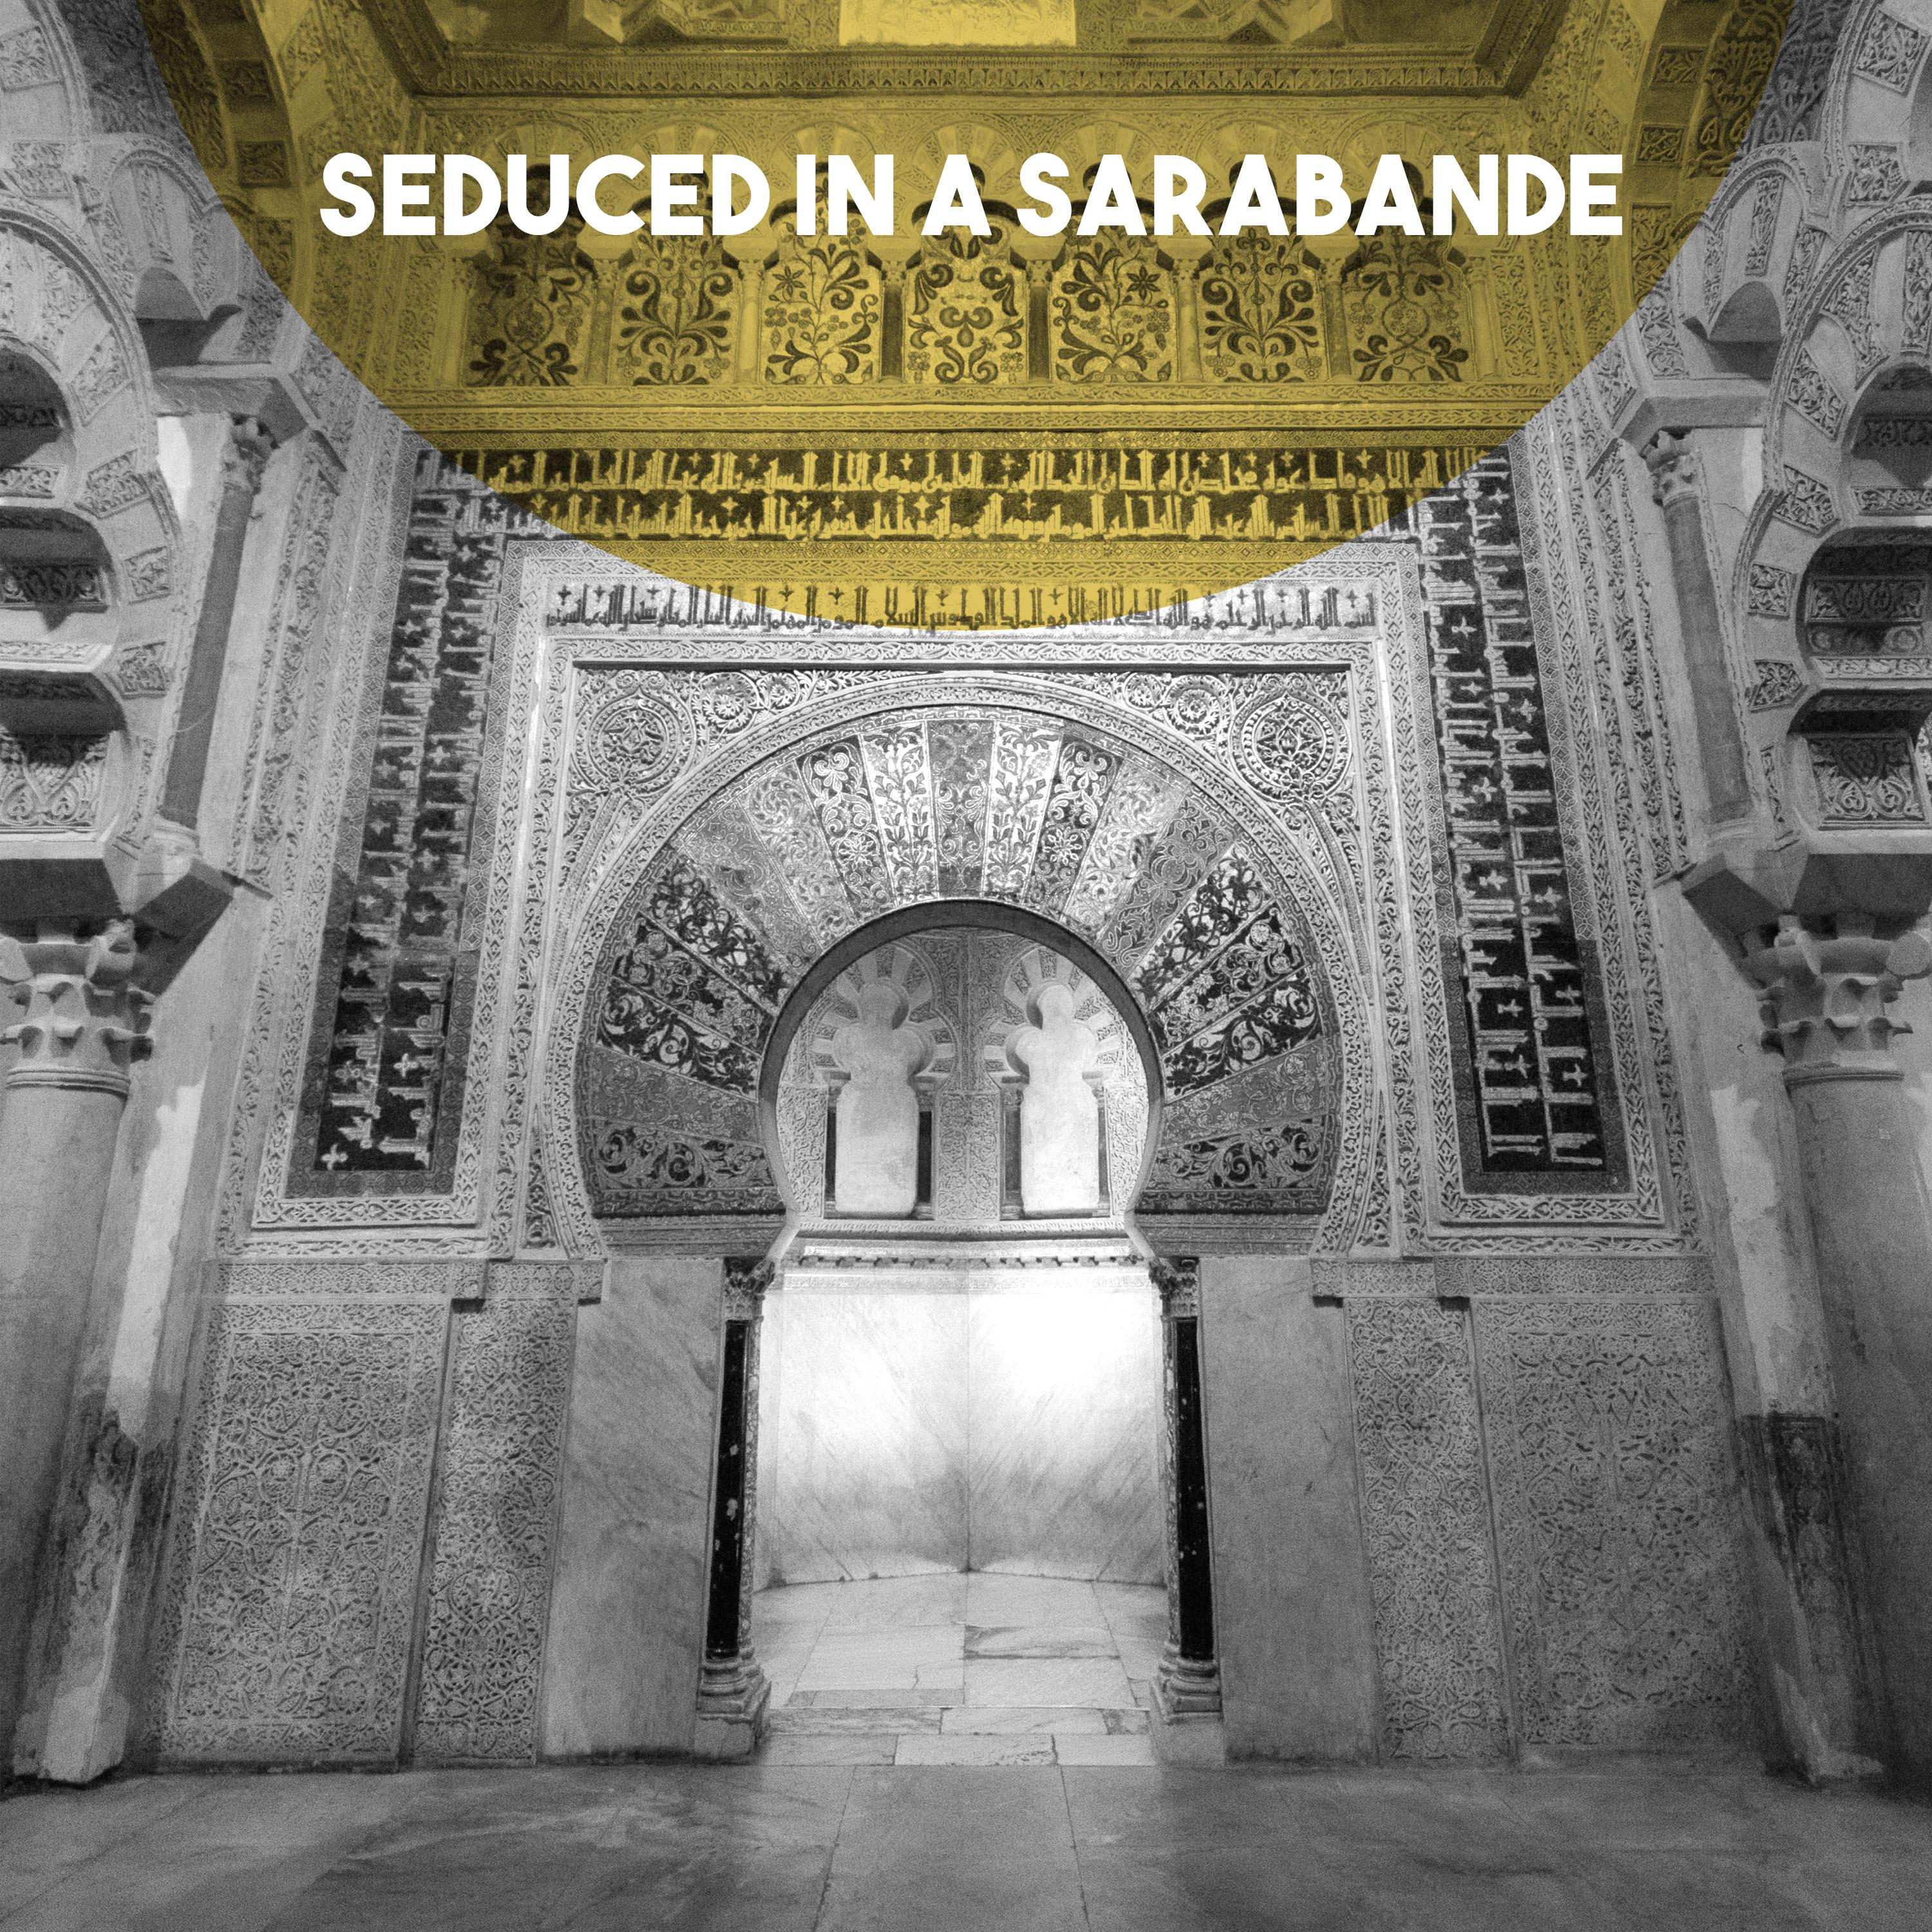 Seduced in a Sarabande